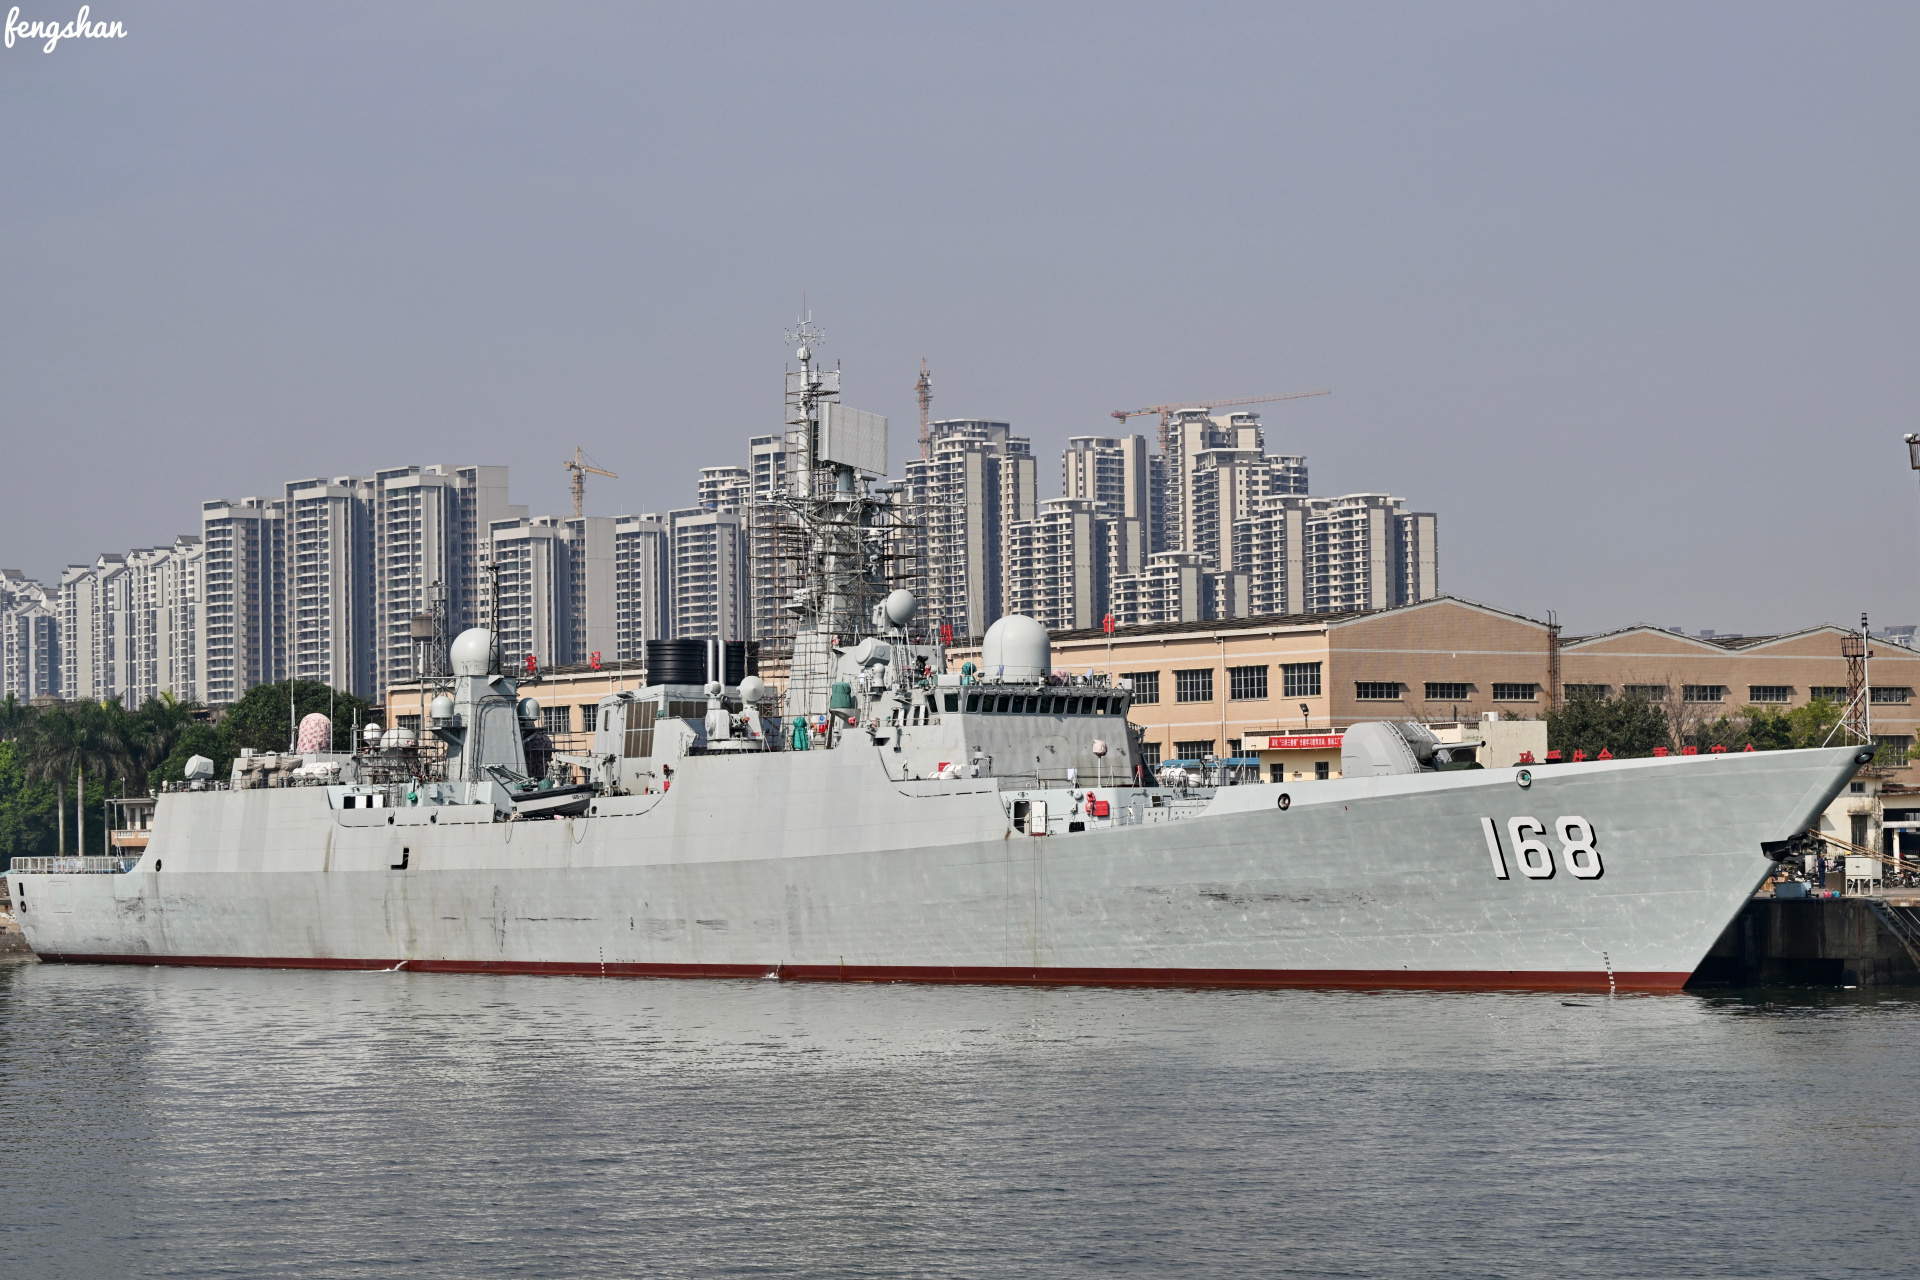 即将完成改造的168广州号导弹驱逐舰,从外观看不出意外的升级为大号